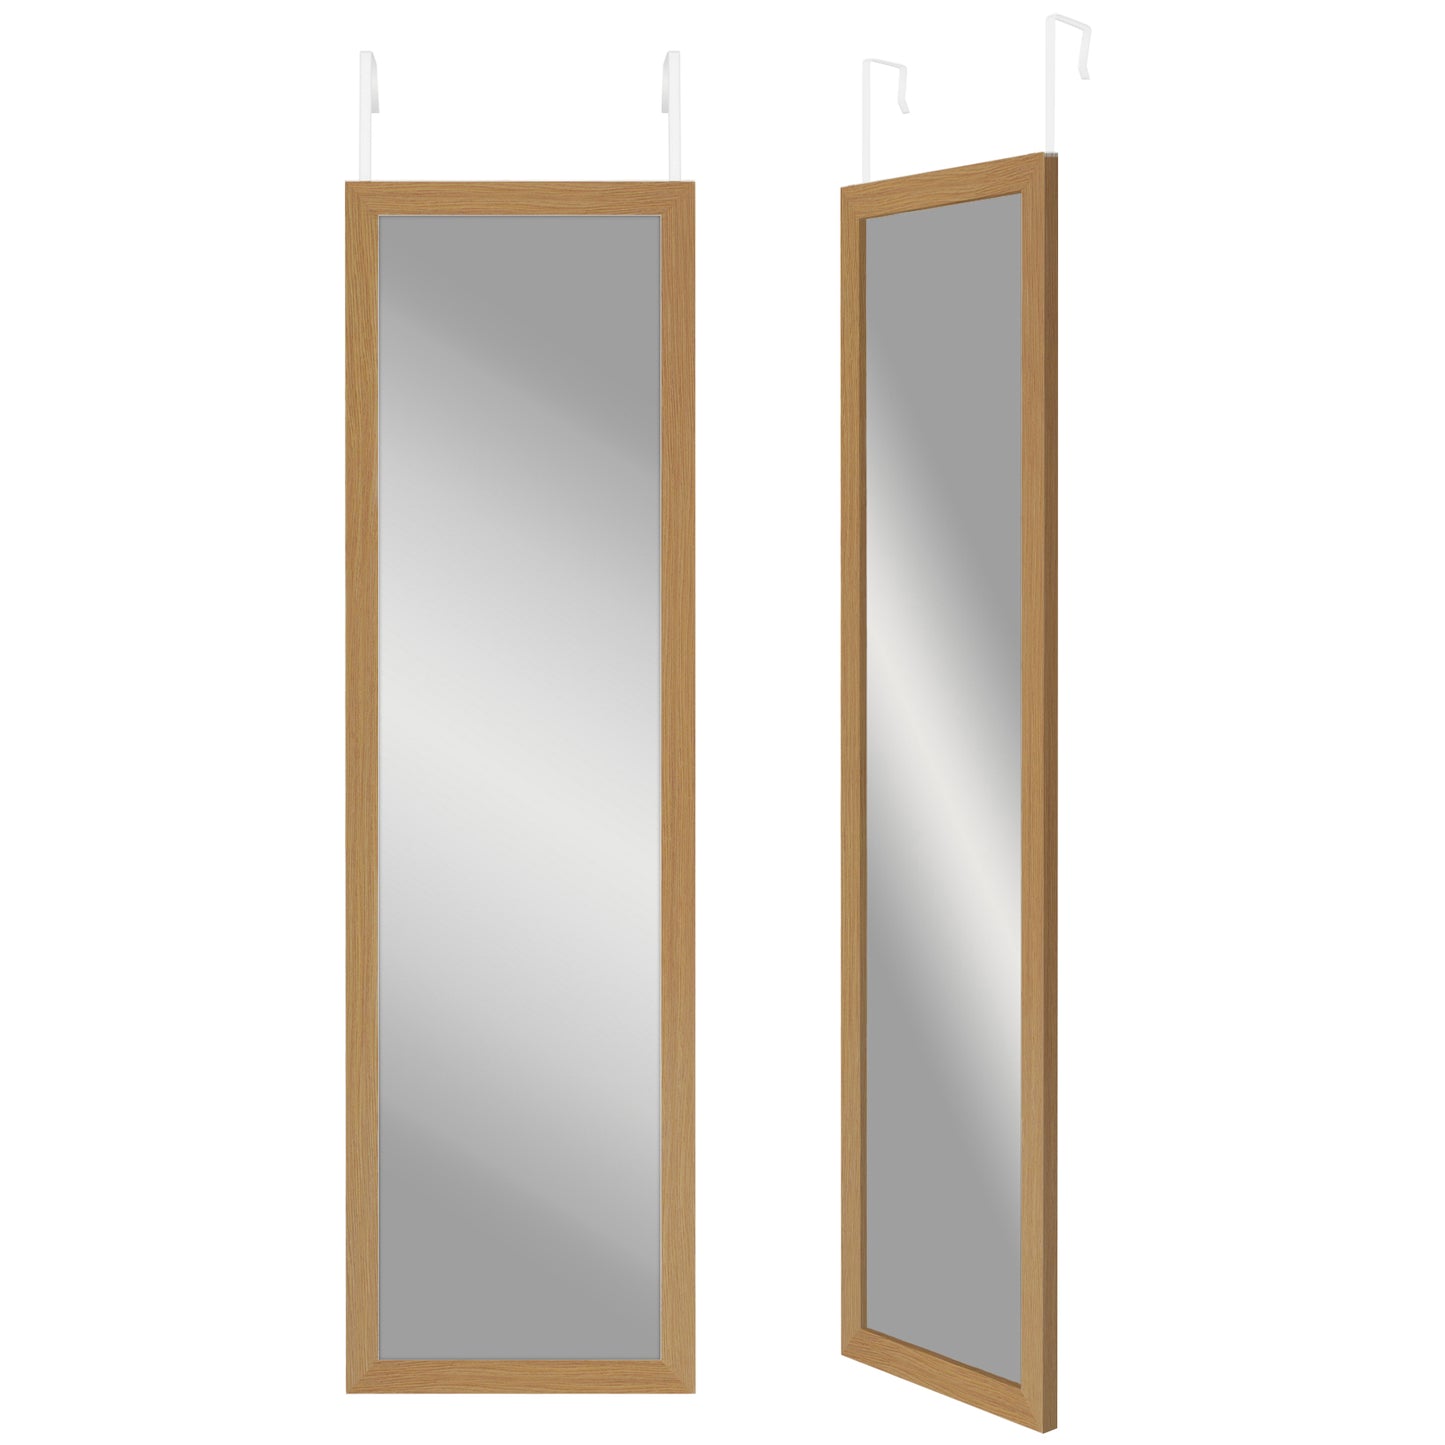 Over The Door Mirror - Full Length Hanging Door Mirror for Bedroom, Bathroom, Dorm - Full Body Mirror with Hanger and Shatter-Resistant Glass